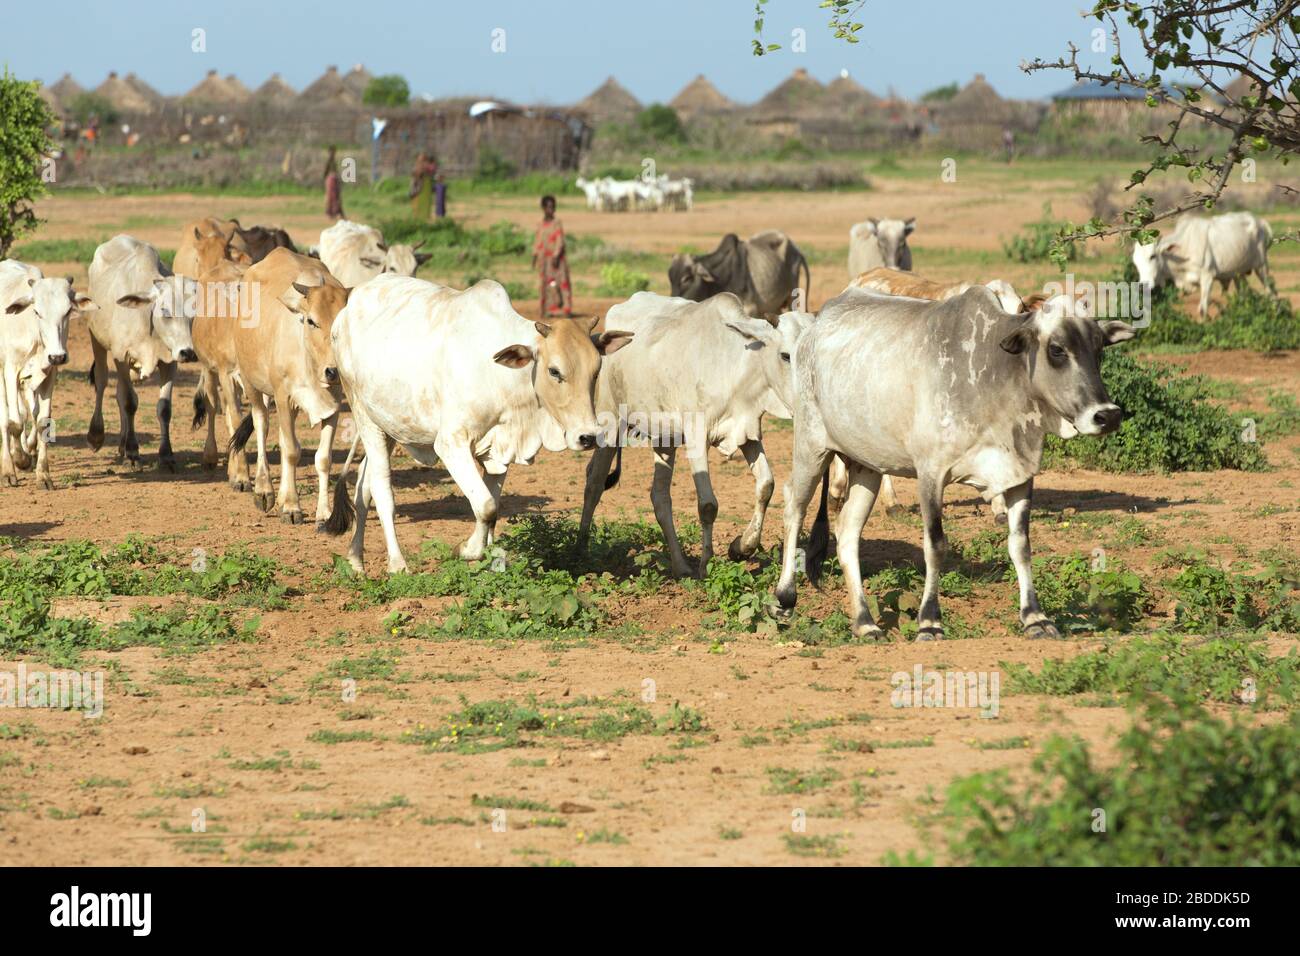 14.11.2019, Gode, Regione somala, Etiopia - allevamento tradizionale di bovini nella regione somala. Documentazione del progetto dell'organizzazione di soccorso arche n Foto Stock